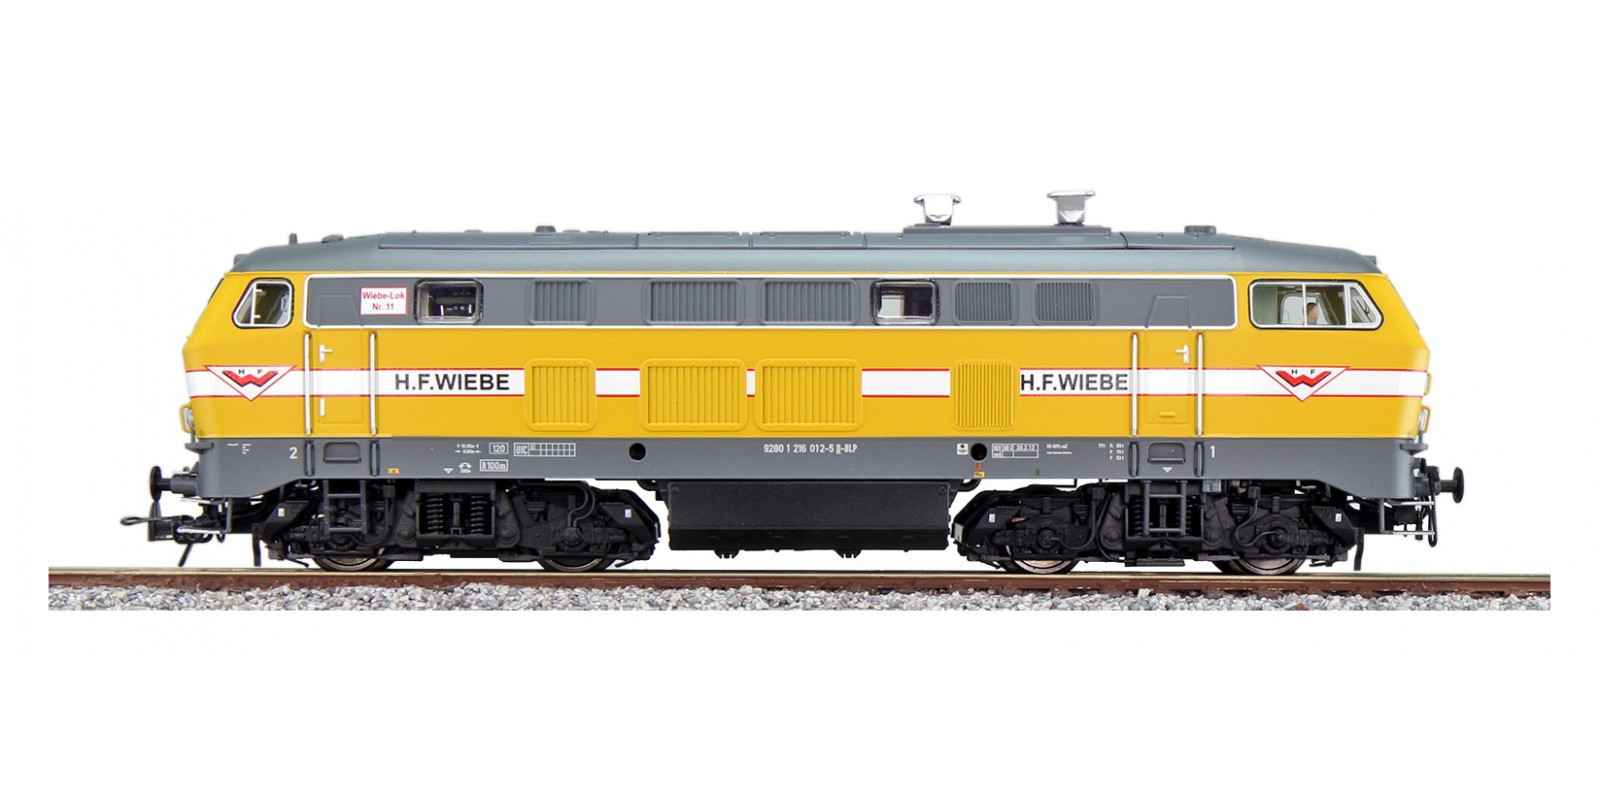 ES31003 Diesel loco, H0, BR 216, 216 012 Wiebe, yellow, Era VI, prototype around 2014, Sound+Smoke, DC/AC